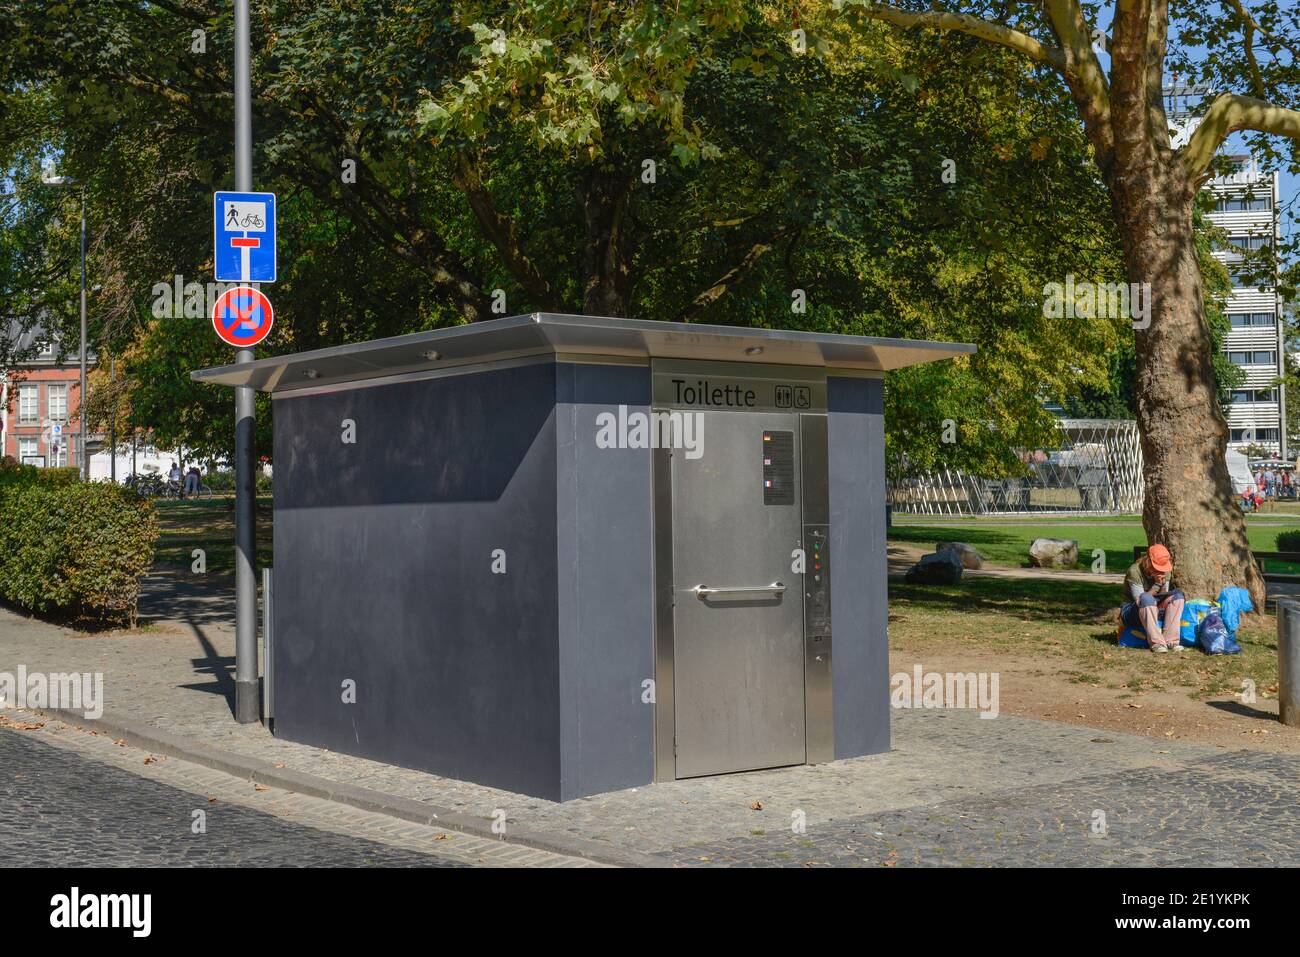 Oeffentliche Toilette, Friedrich-Wilhelm-Platz, Aachen, Nordrhein-Westfalen, Deutschland Stock Photo